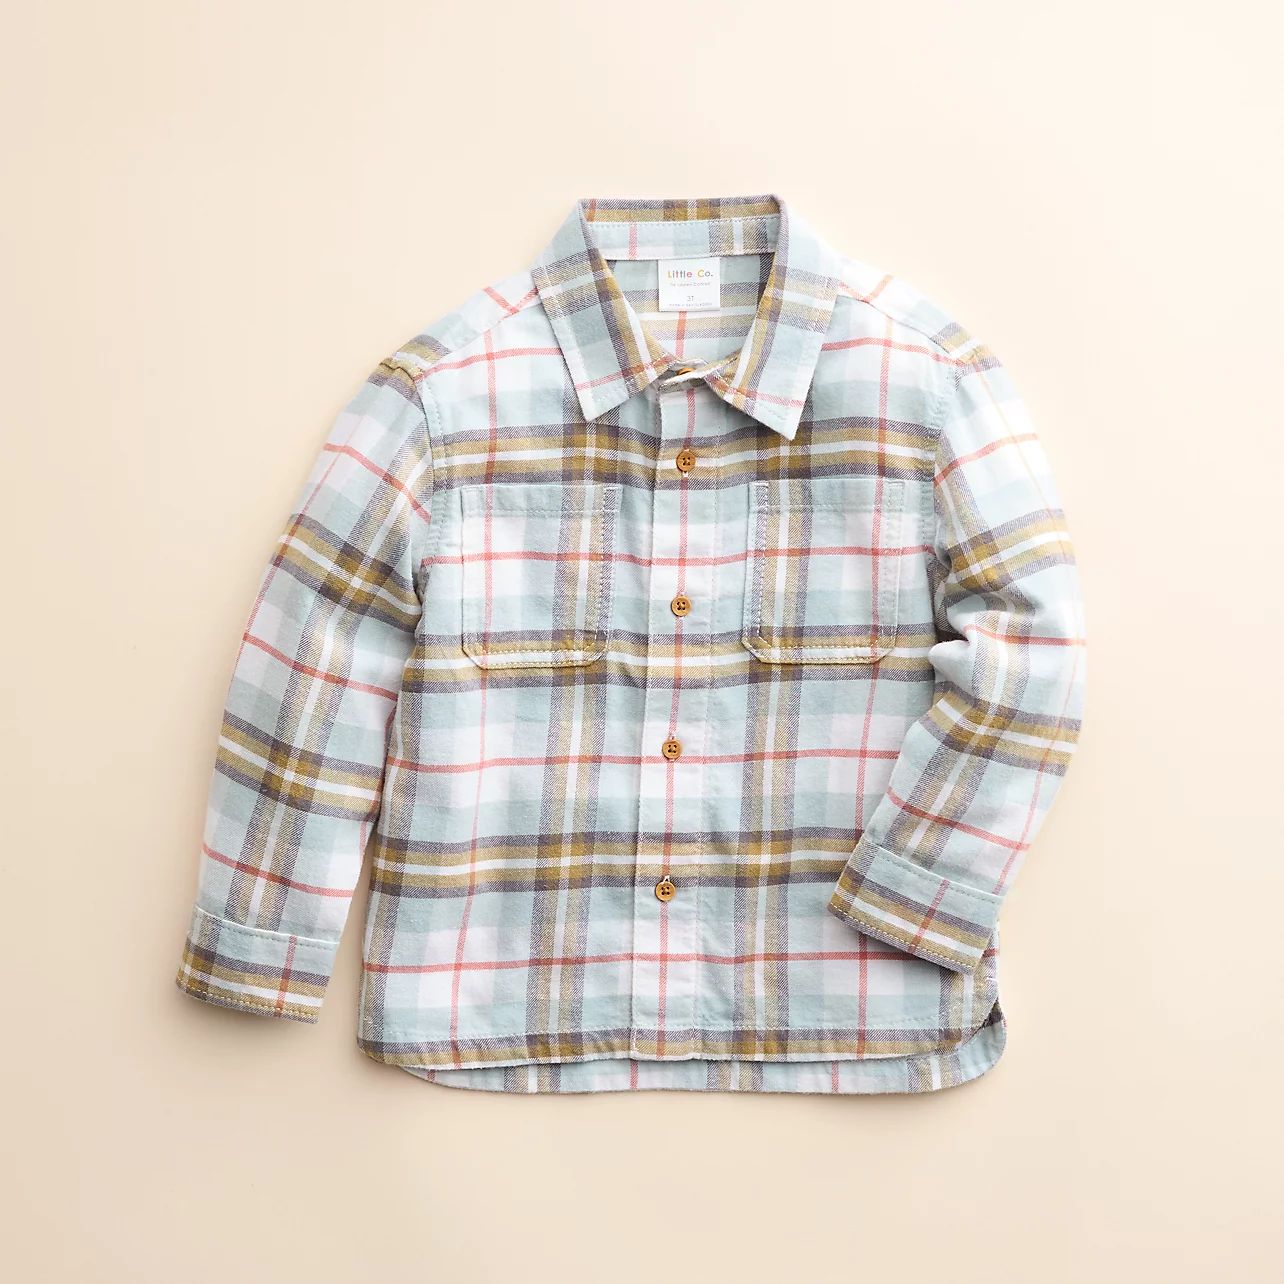 Baby & Toddler Little Co. by Lauren Conrad Organic Shirt | Kohls | Kohl's